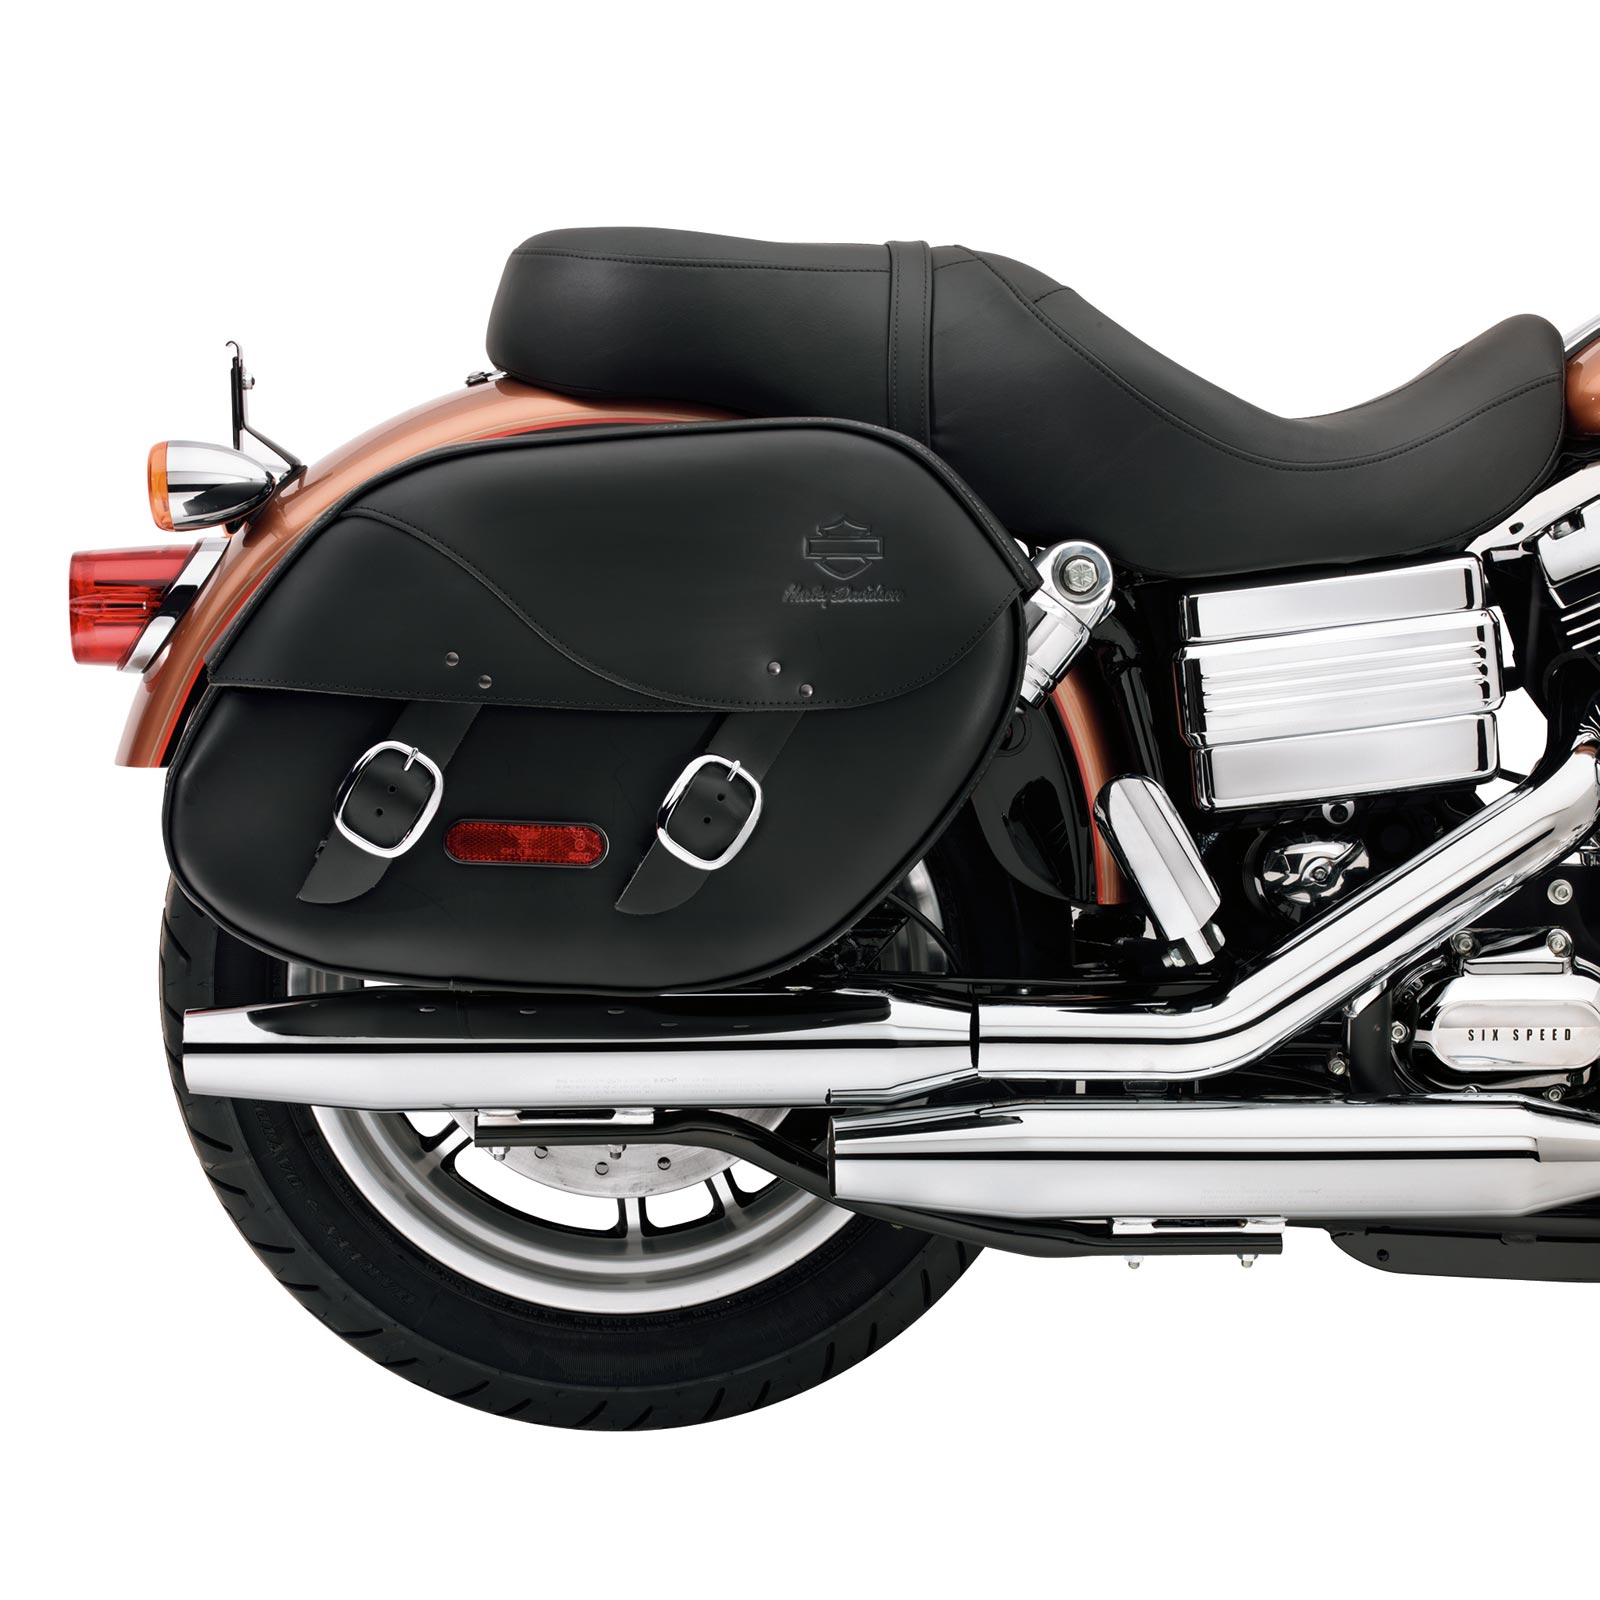 Harley Davidson Motorcycle Saddlebags